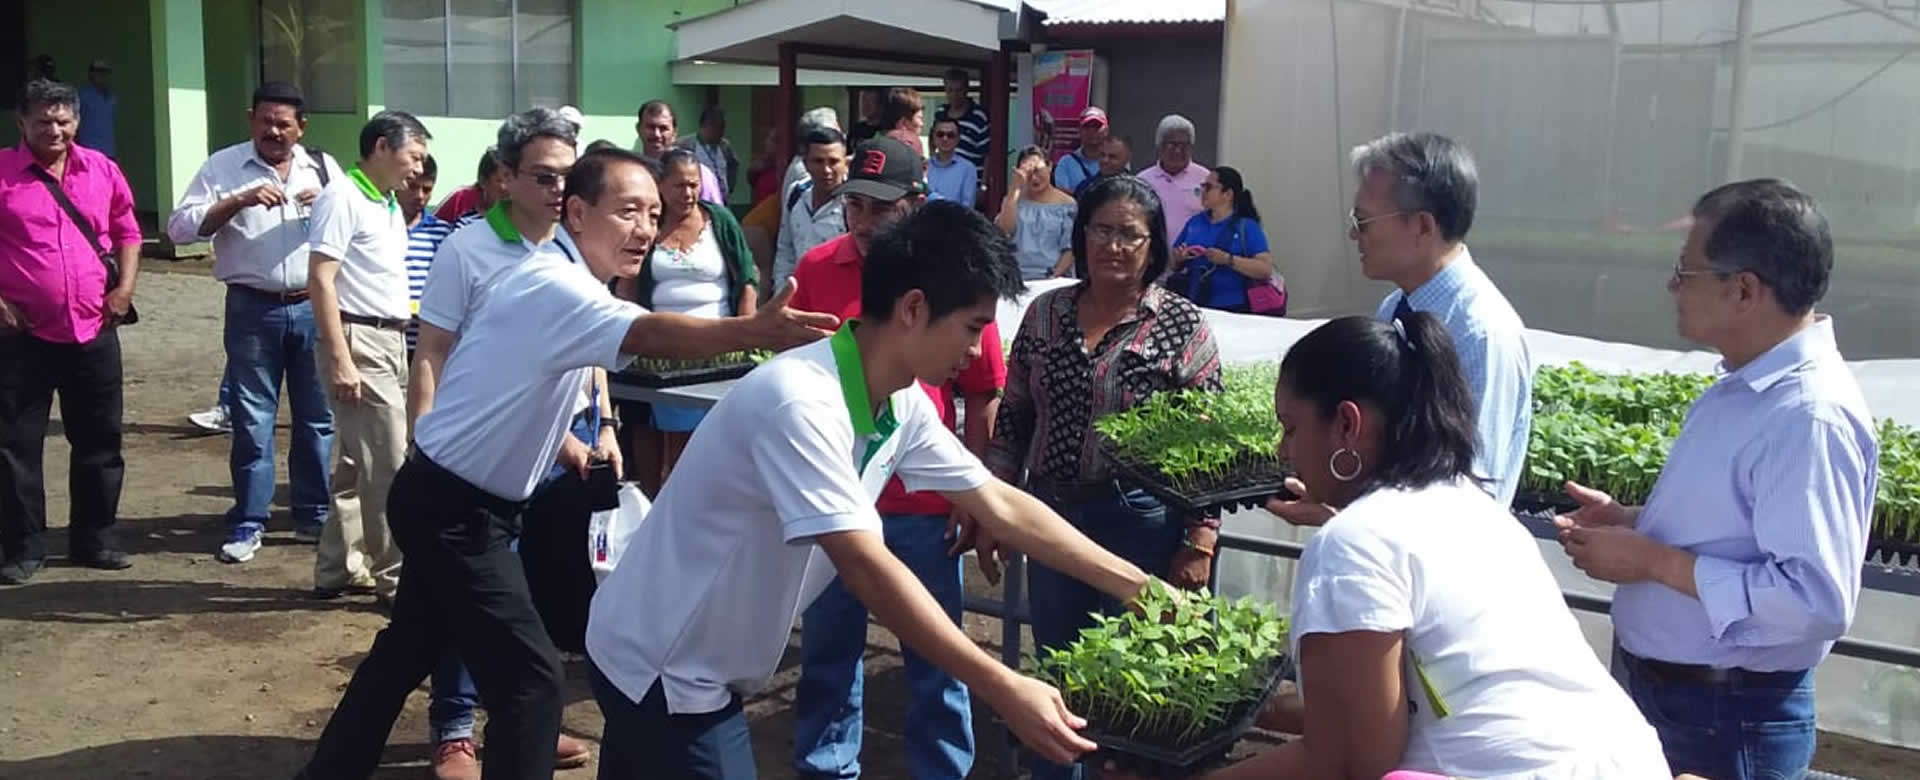 Misión China - Taiwán y pequeños productores inauguran invernadero de plántulas de frutas y hortaliza